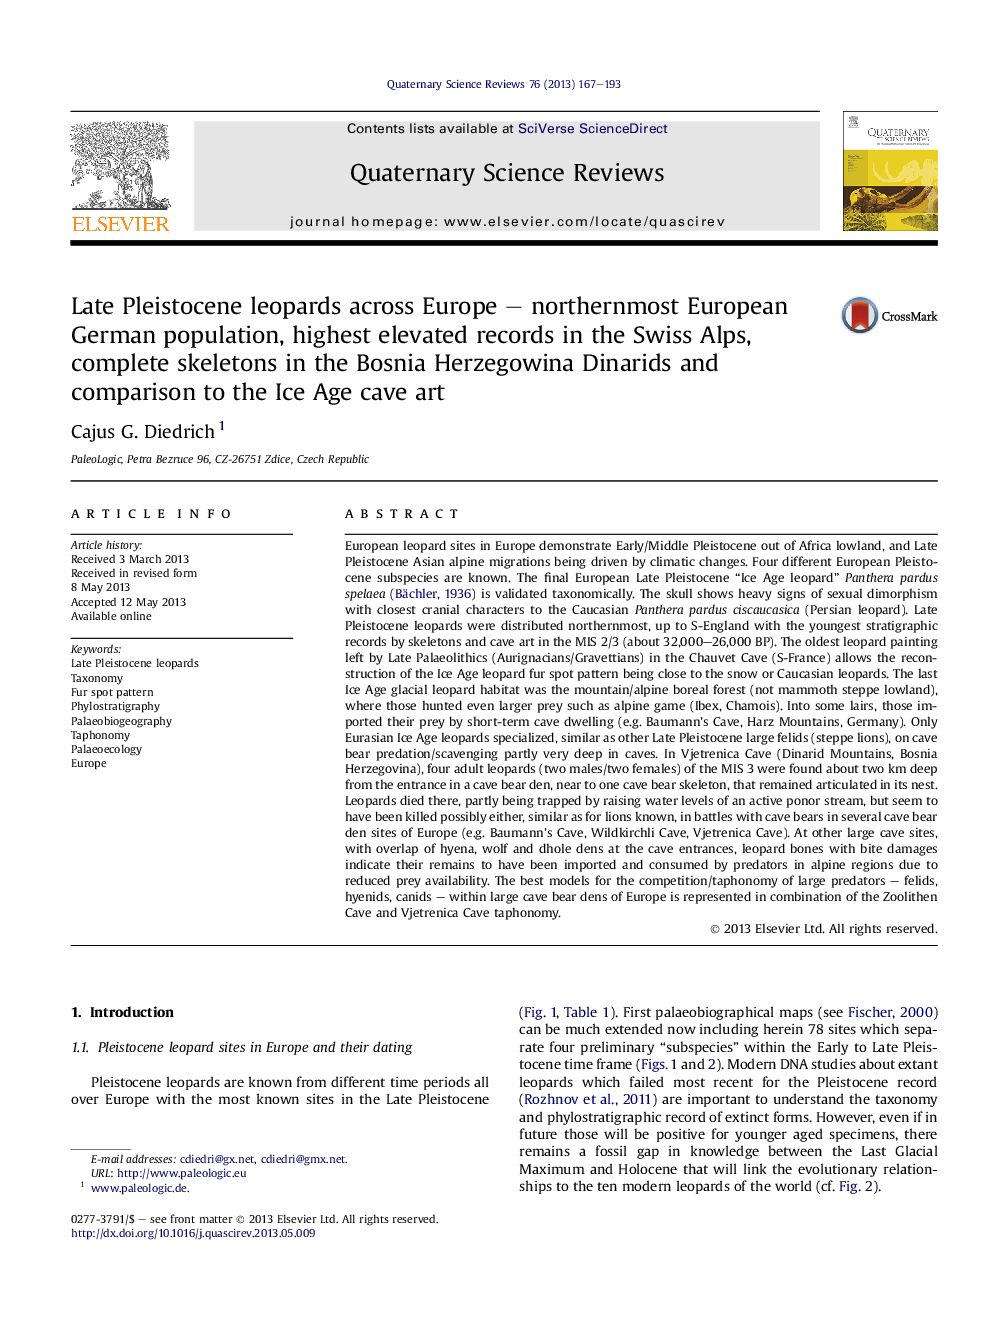 لئونارد پیلیست کین در اواخر اروپا - جمعیت شمال اروپا اروپایی، بالاترین رکورد بالا در آلپ سوئیس، اسکلت کامل در دایناسورهای بوسنی هرزگوین و مقایسه آن با هنر عصر یخبندان 